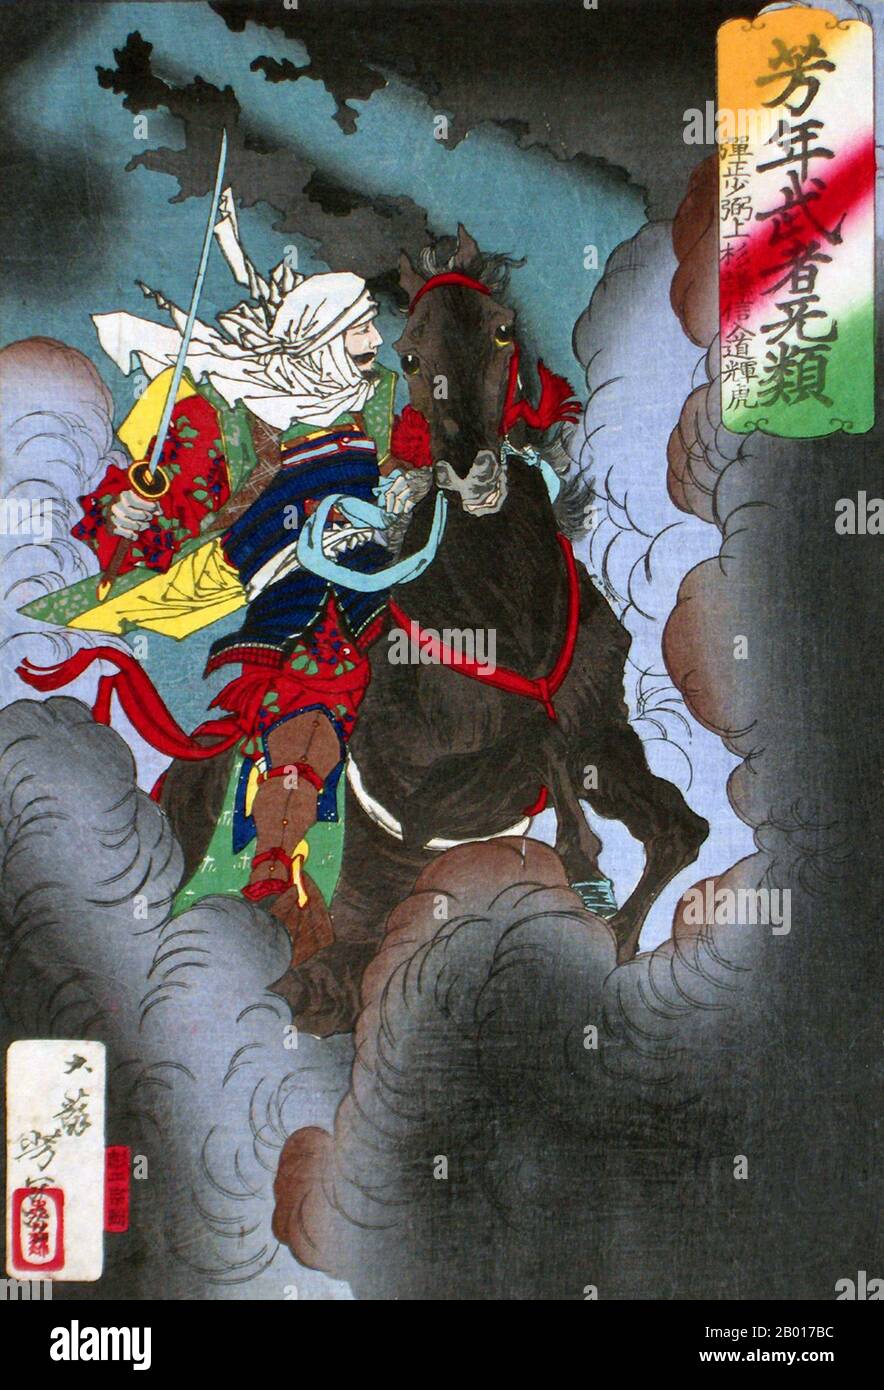 Japon: 'Uesugi Kenshin Nyudo Teutora de l'équitation dans la bataille'.Imprimé Ukiyo-e par Tsukioka Yoshitoshi (1839 - 9 juin 1892), 1883.Tsukioka Yoshitoshi, également appelé Tiso Yoshitoshi, était un artiste japonais.Il est largement reconnu comme le dernier grand maître d'Ukiyo-e, un type d'impression de blocs de bois japonais.Il est également considéré comme l'un des plus grands innovateurs de la forme.Sa carrière s'est étendue à deux époques : les dernières années du Japon féodal et les premières années du Japon moderne après la restauration de Meiji. Banque D'Images